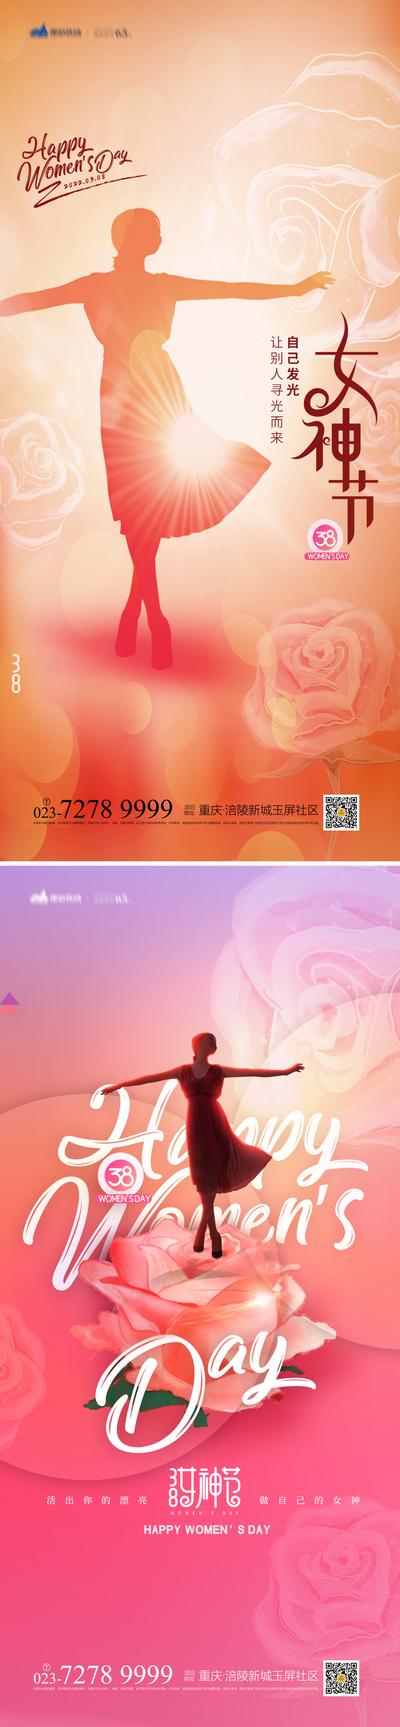 南门网 海报 房地产 公历节日 妇女节 女神节 系列 数字 剪影